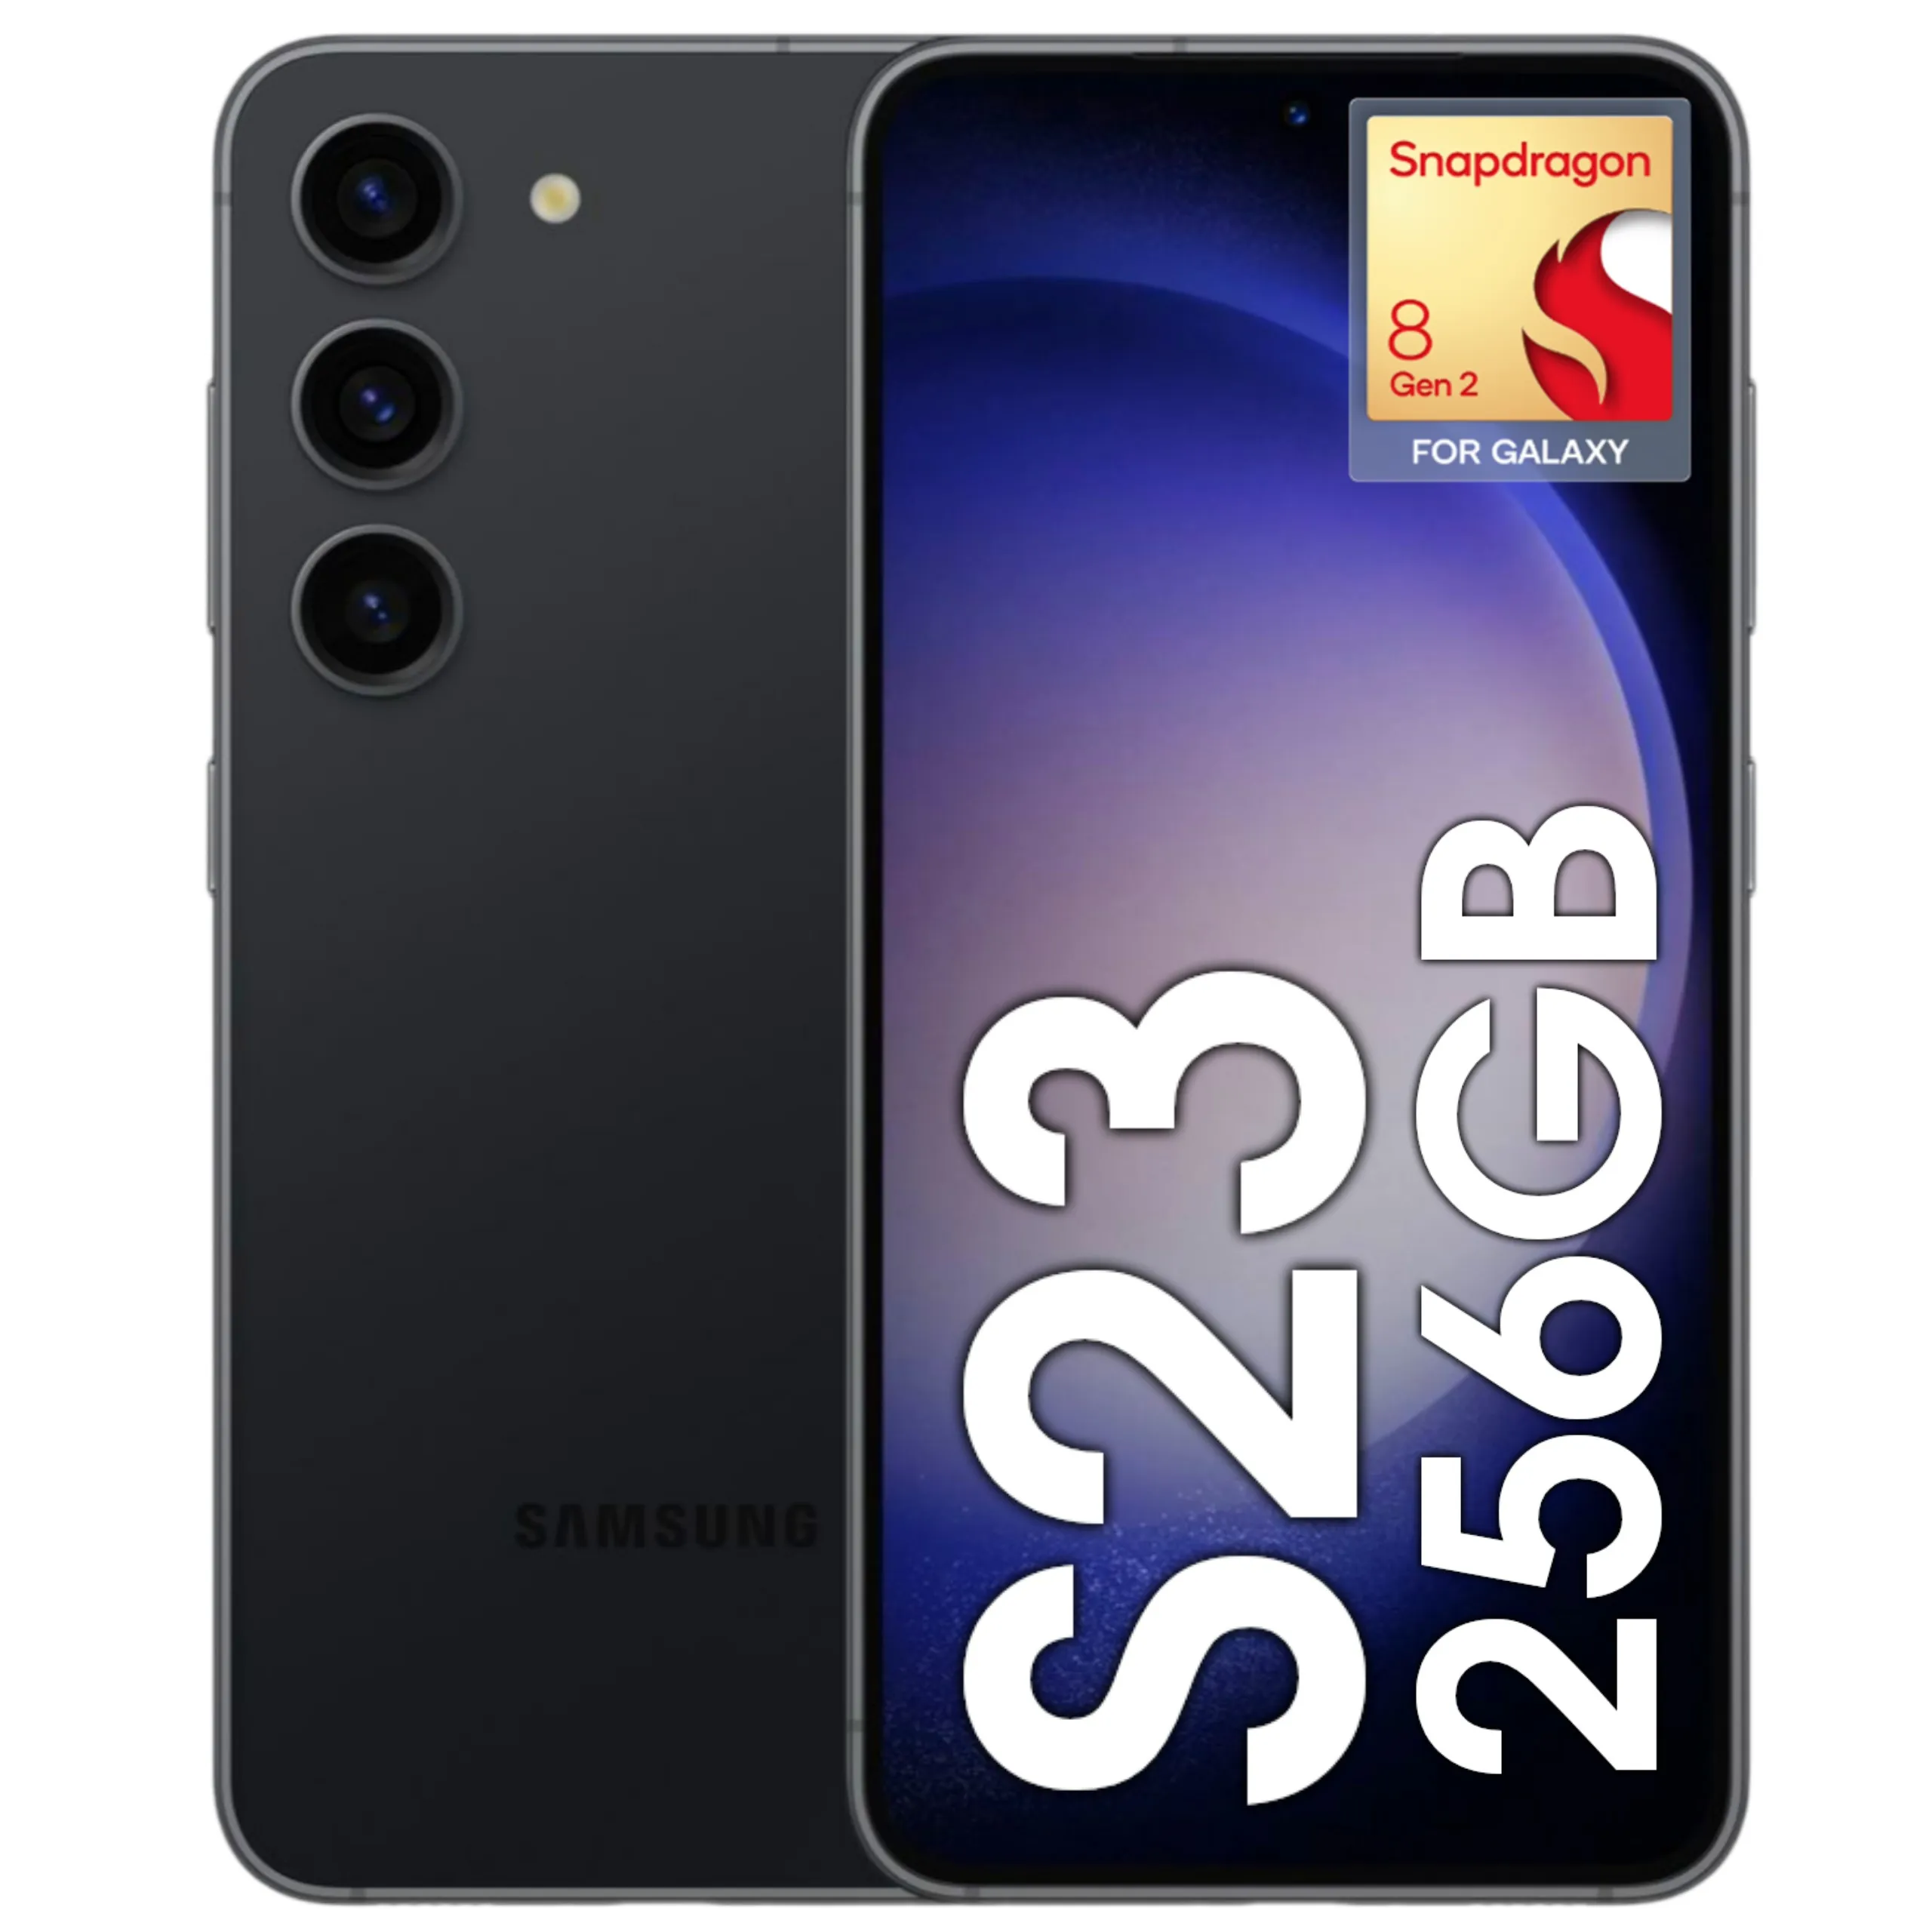 [C. Ouro] Smartphone Samsung Galaxy S23 5g 256gb 8gb Ram Tela 6.1 Snapdragon 8gen2 For Galaxy